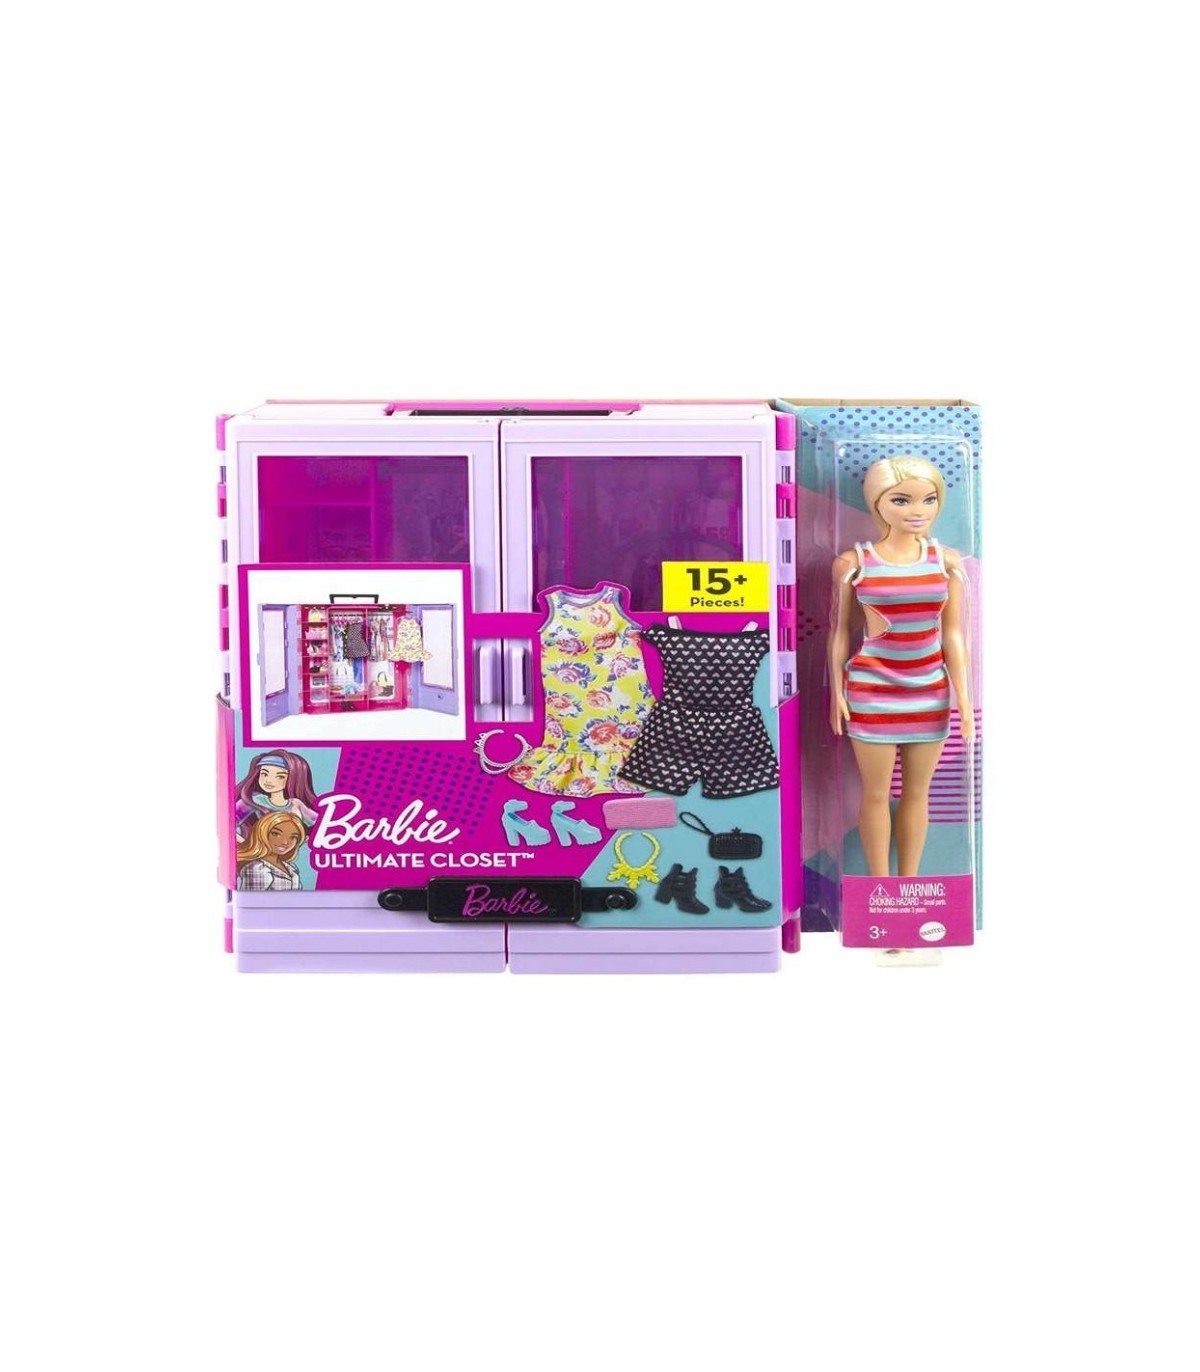 Compra ya tu Barbie Fashionista Armario para ropa de muñeca, 3 looks completos, 6 perchas y muñeca por solo 44,99 €